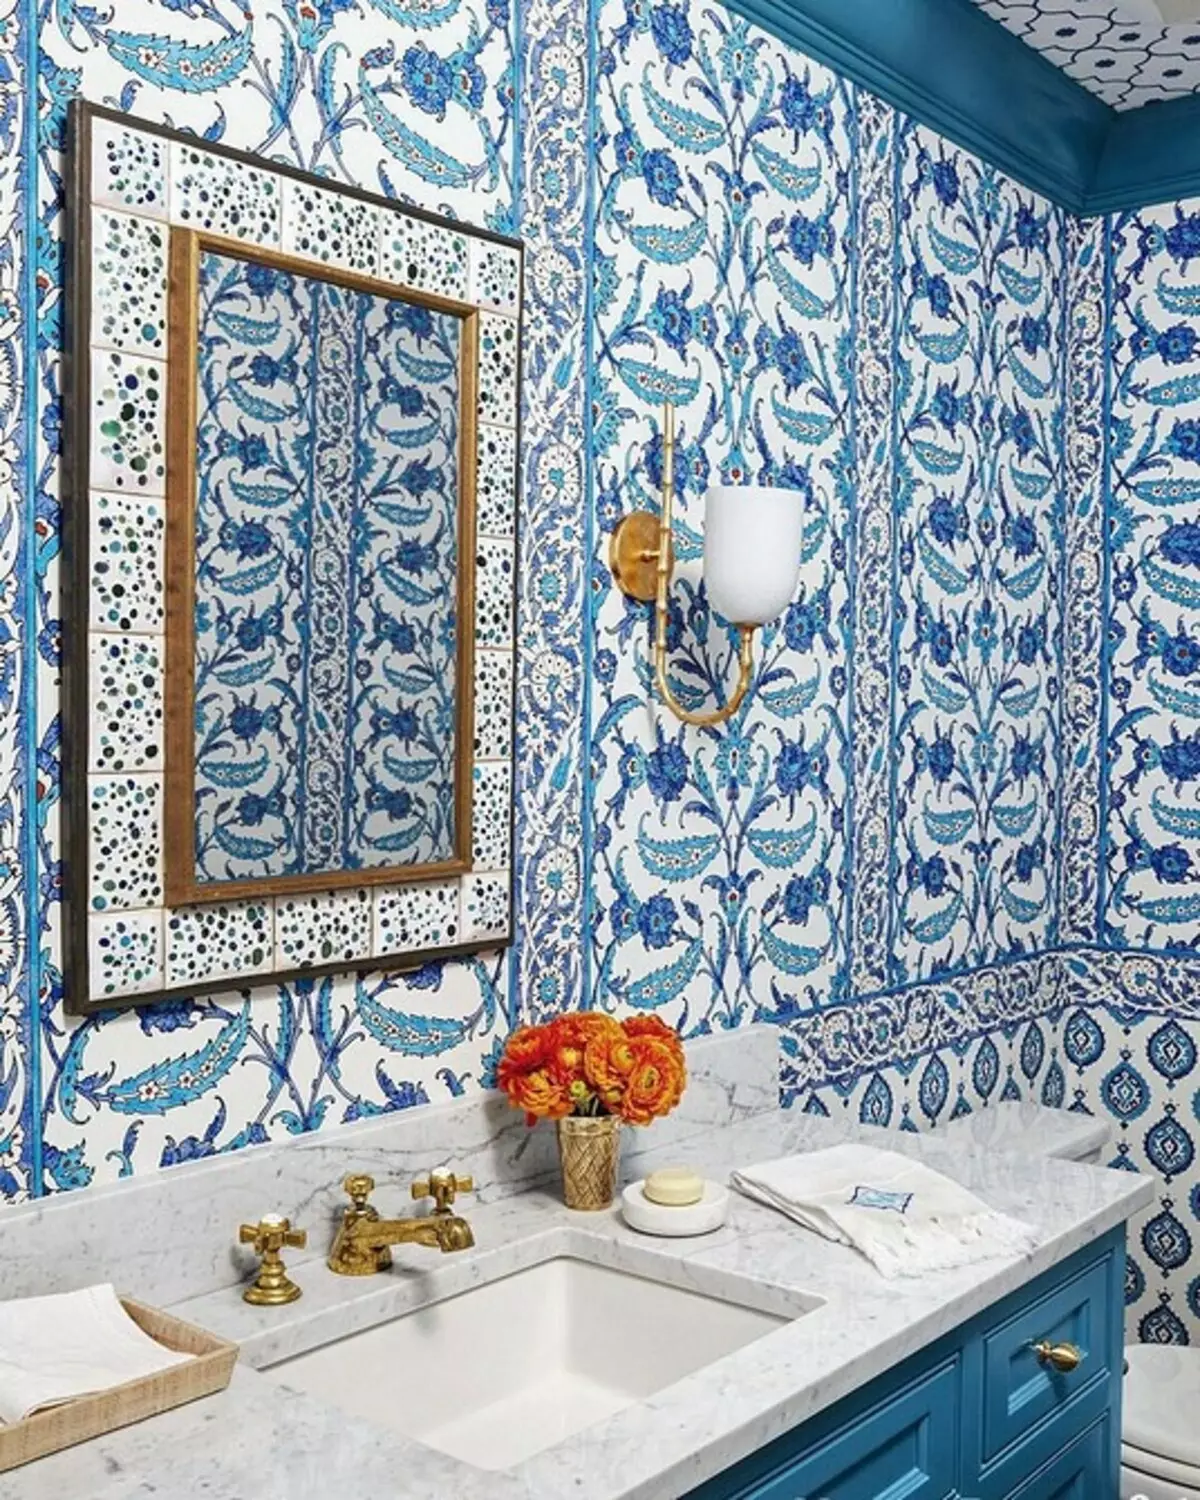 Desain modis saka kamar mandi biru: Kita milih warna, tekstur lan bahan 3036_36